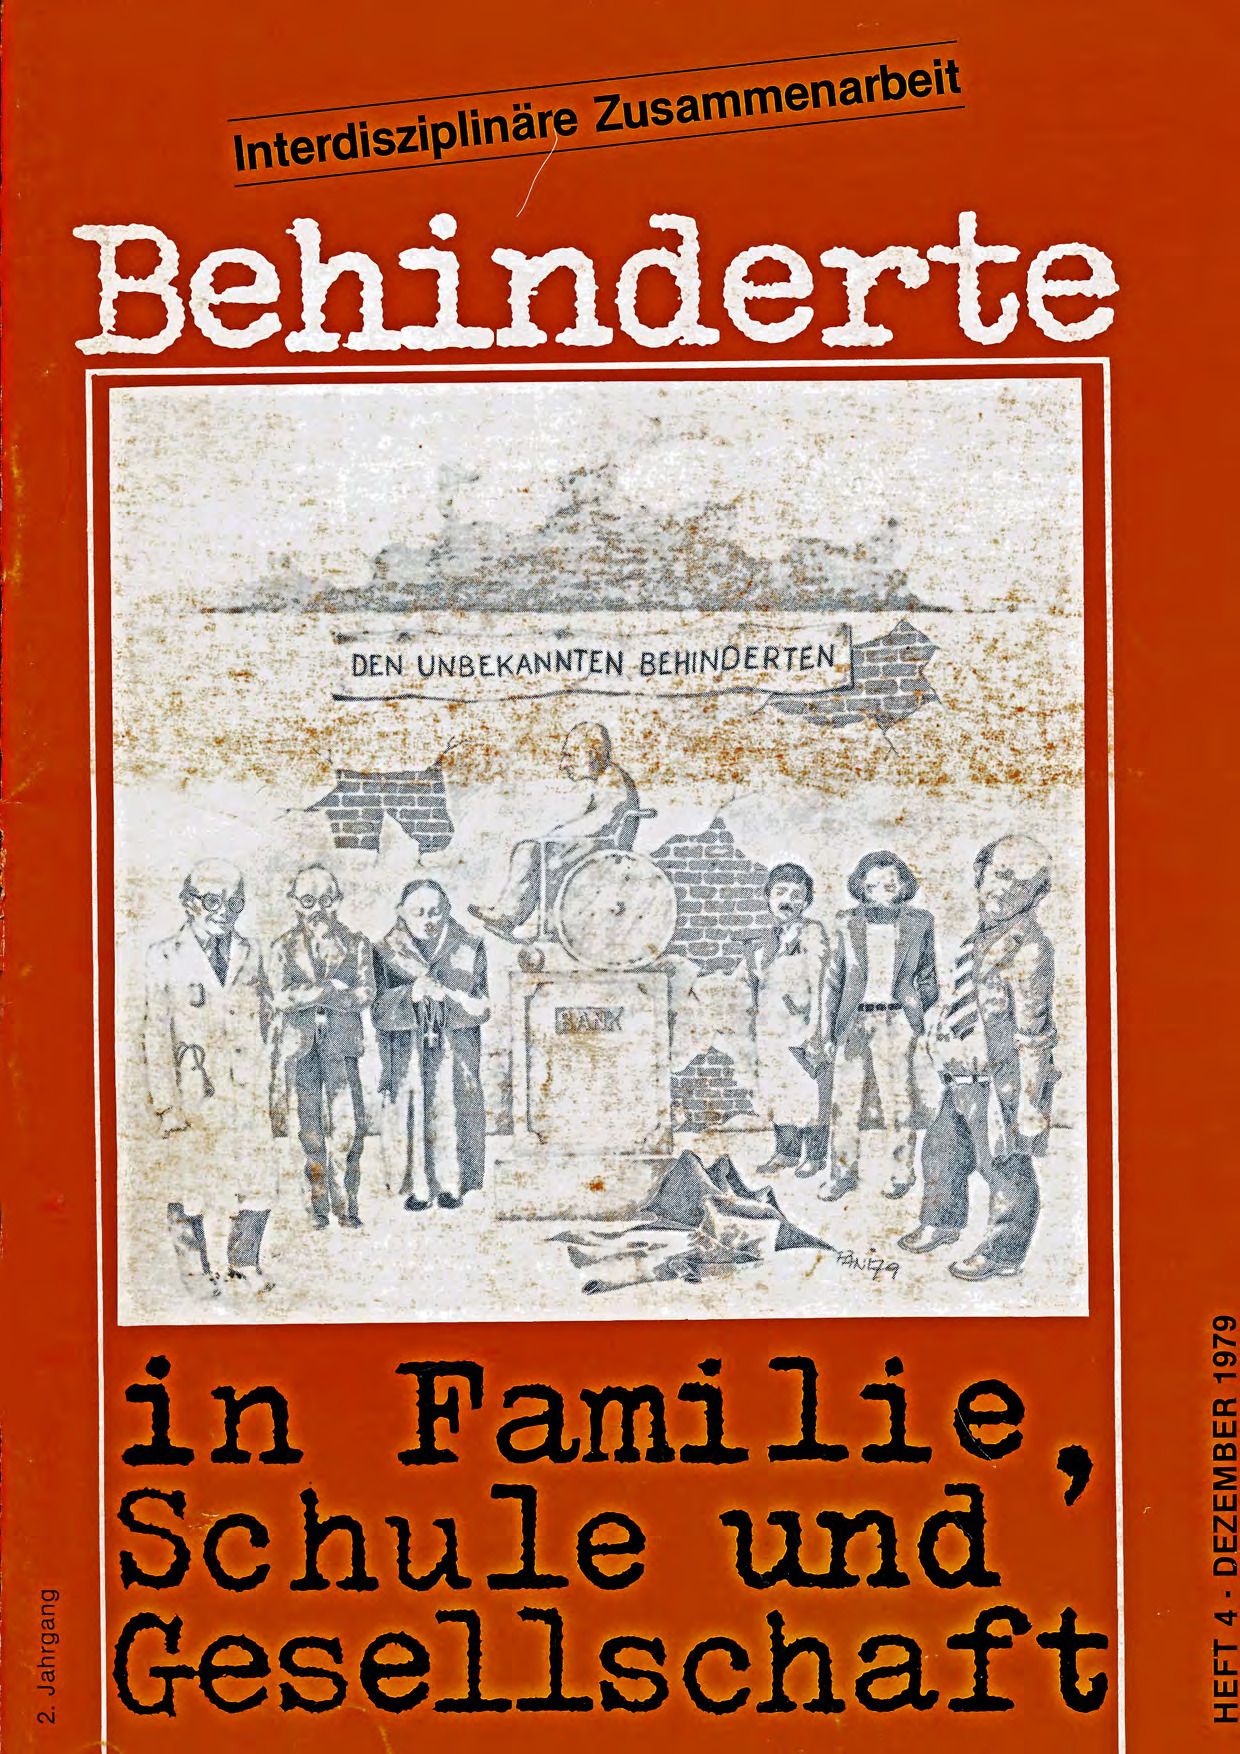 Titelbild der Zeitschrift BEHINDERTE MENSCHEN, Ausgabe 4/1979 "Interdisziplinäre Zusammenarbeit"